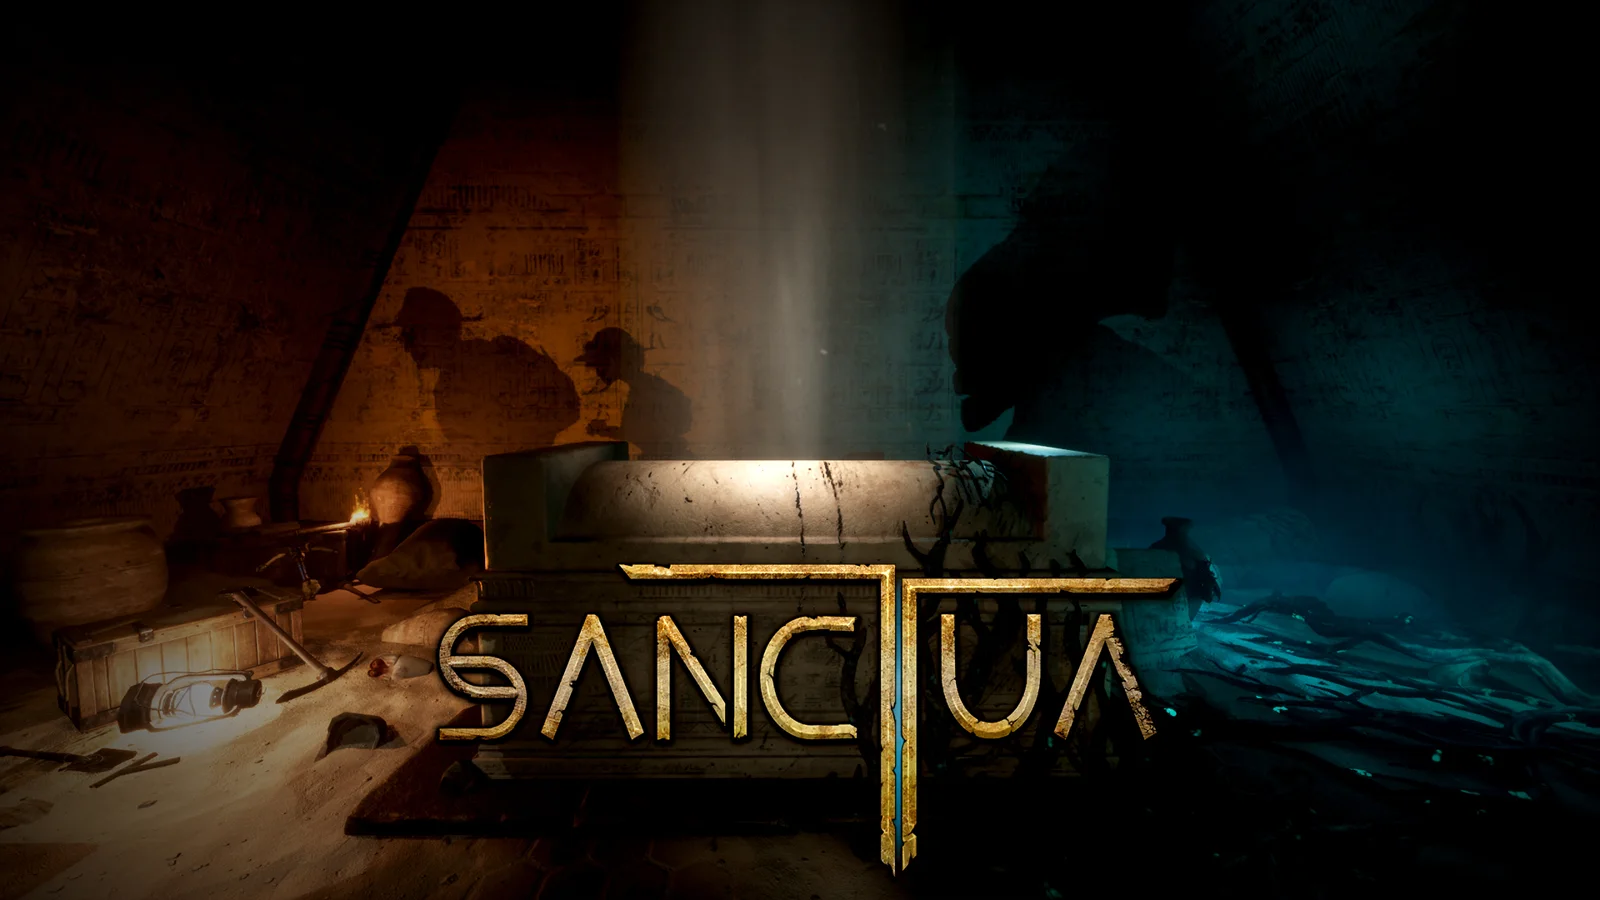 Sanctua